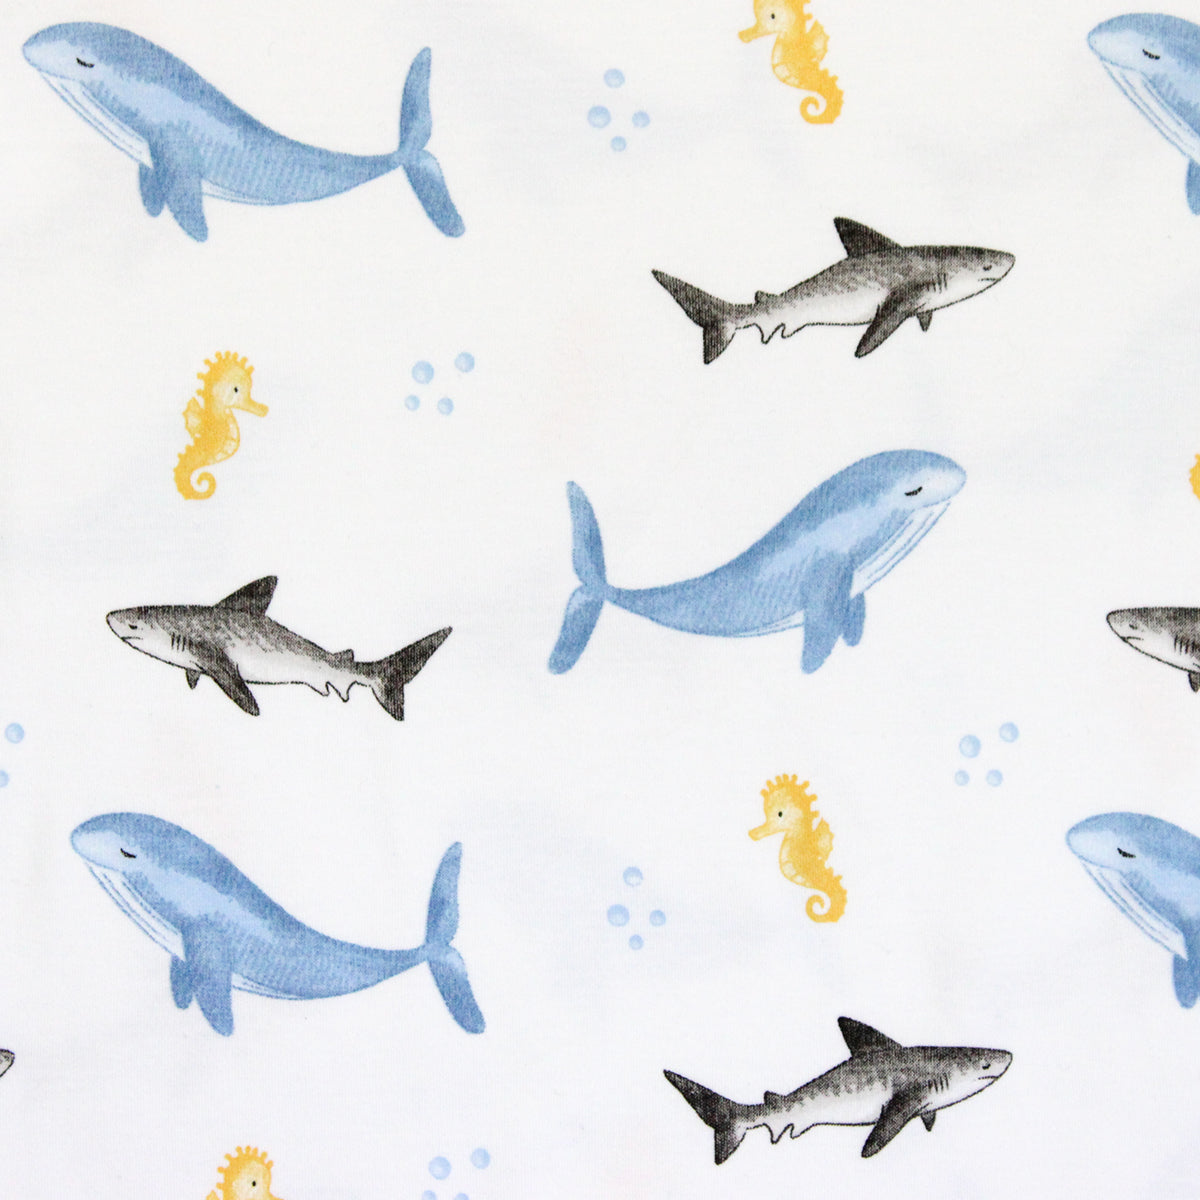 Sea Animals printed Pajama | Boy